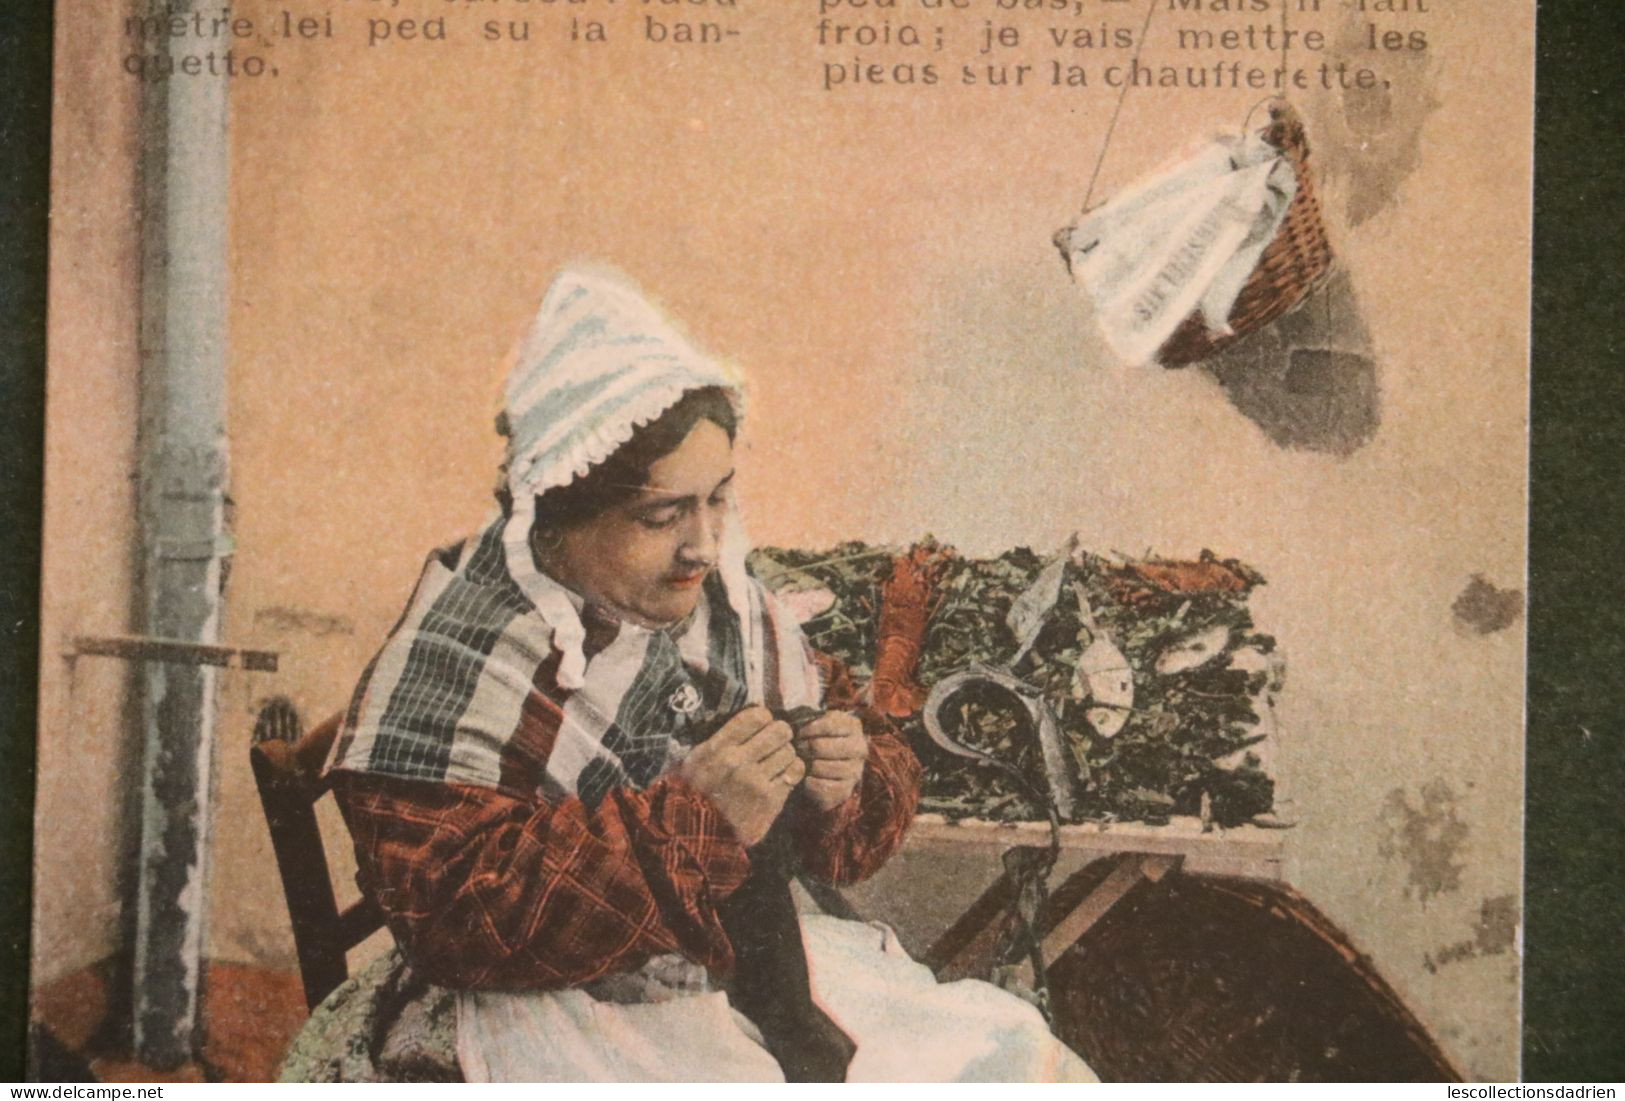 Carte Postale - Types Marseillais  La Poissonnière Femme Assise - Fischerei